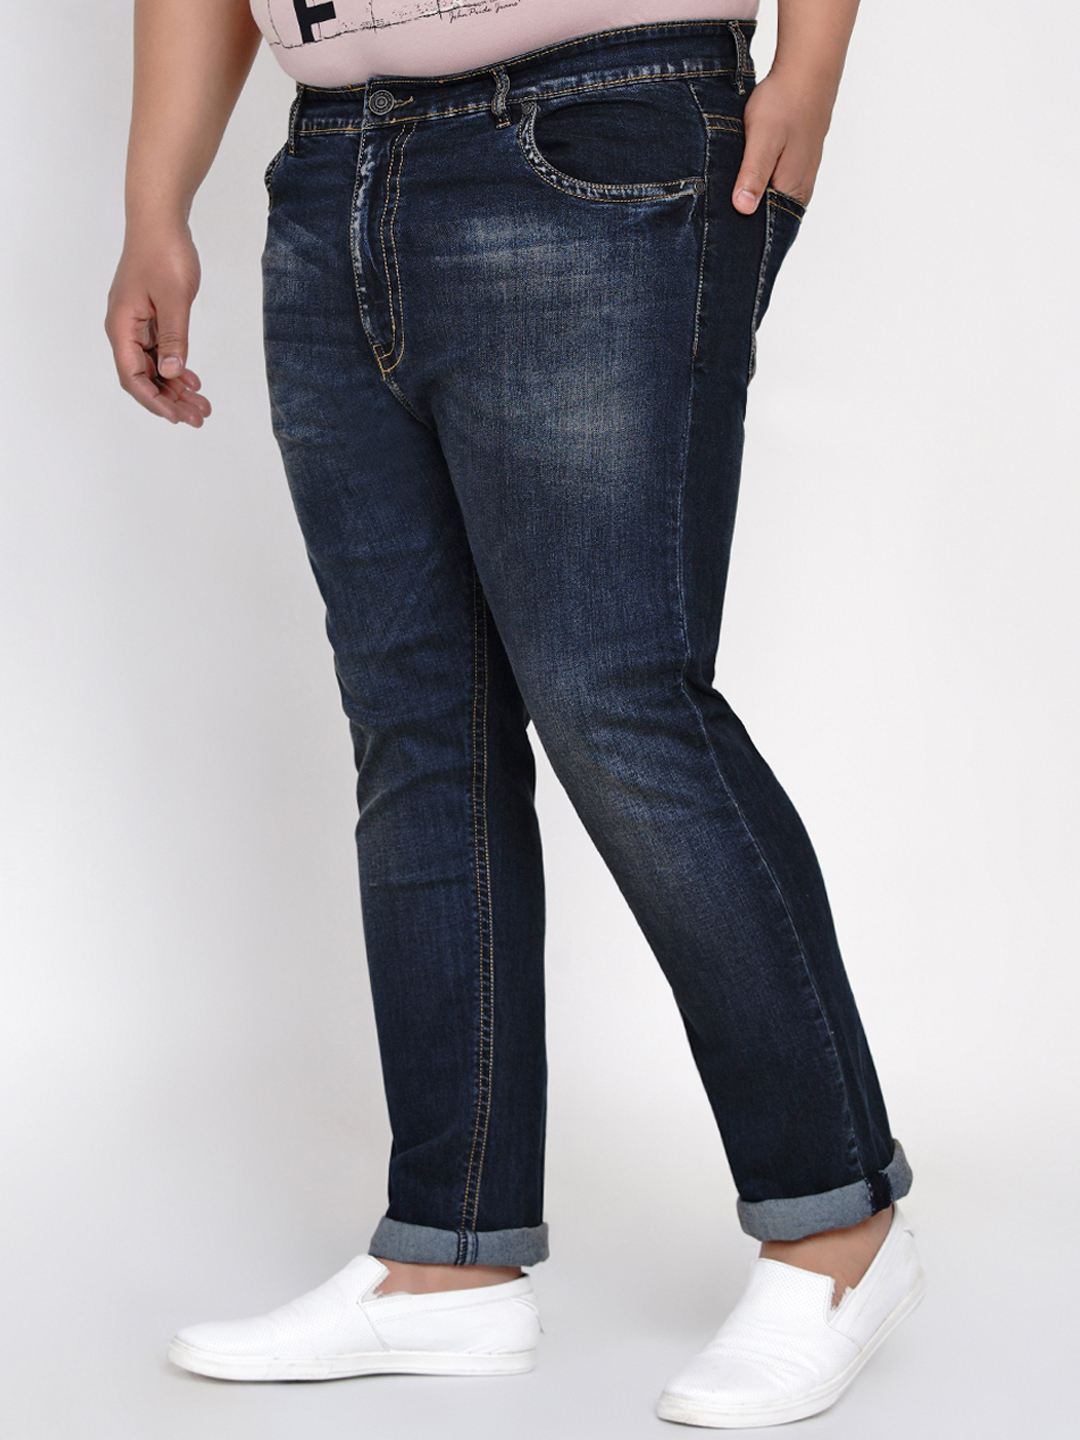 bottomwear/jeans/JPJ12123/jpj12123-4.jpg